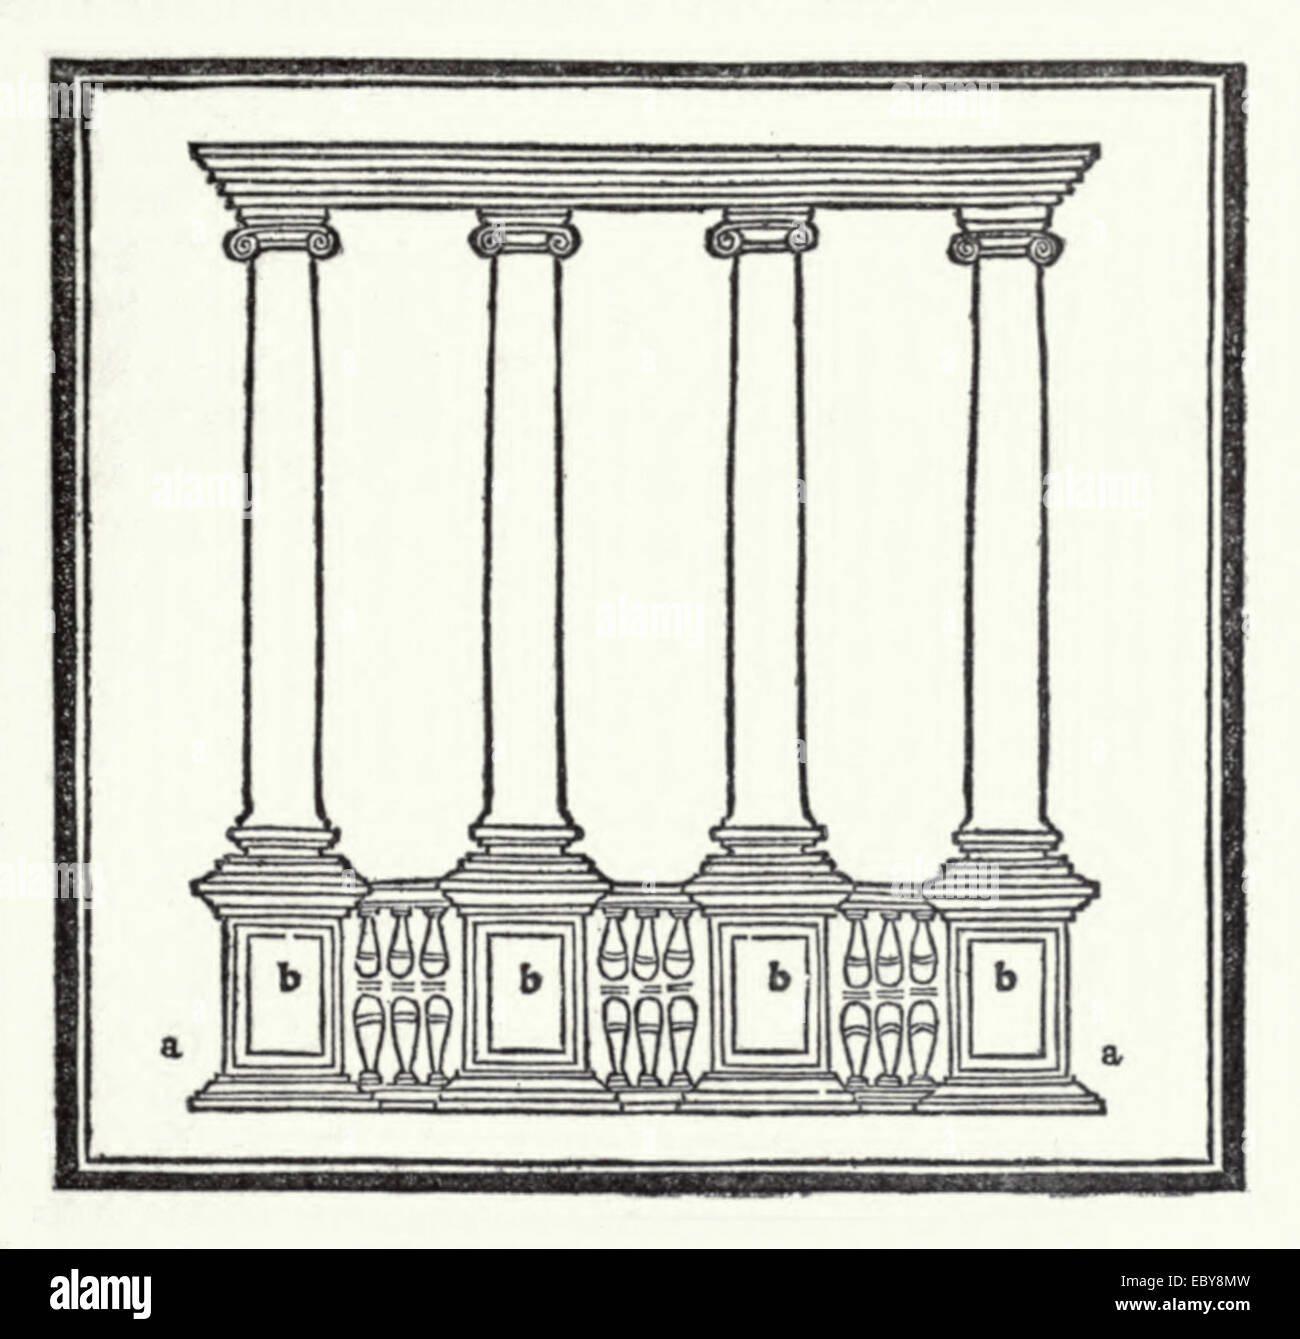 Holzschnitt von Fra Giocondo 1511 "Tacuino" Ausgabe von "De Architectura" von Vitruv. Siehe Beschreibung für mehr Informationen. Stockfoto